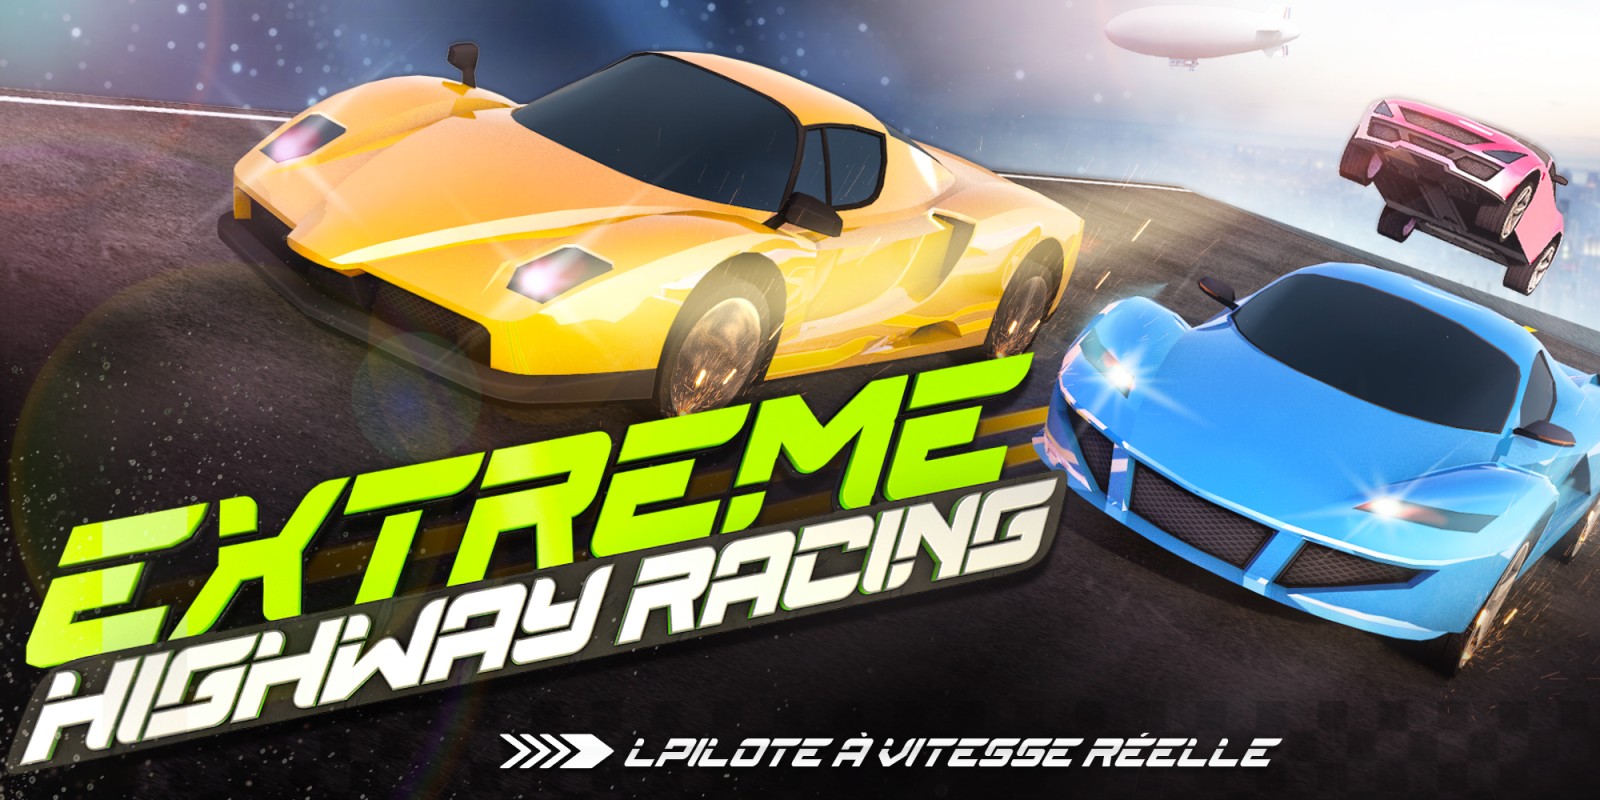 Extreme Highway Racing: lPilote à vitesse réelle